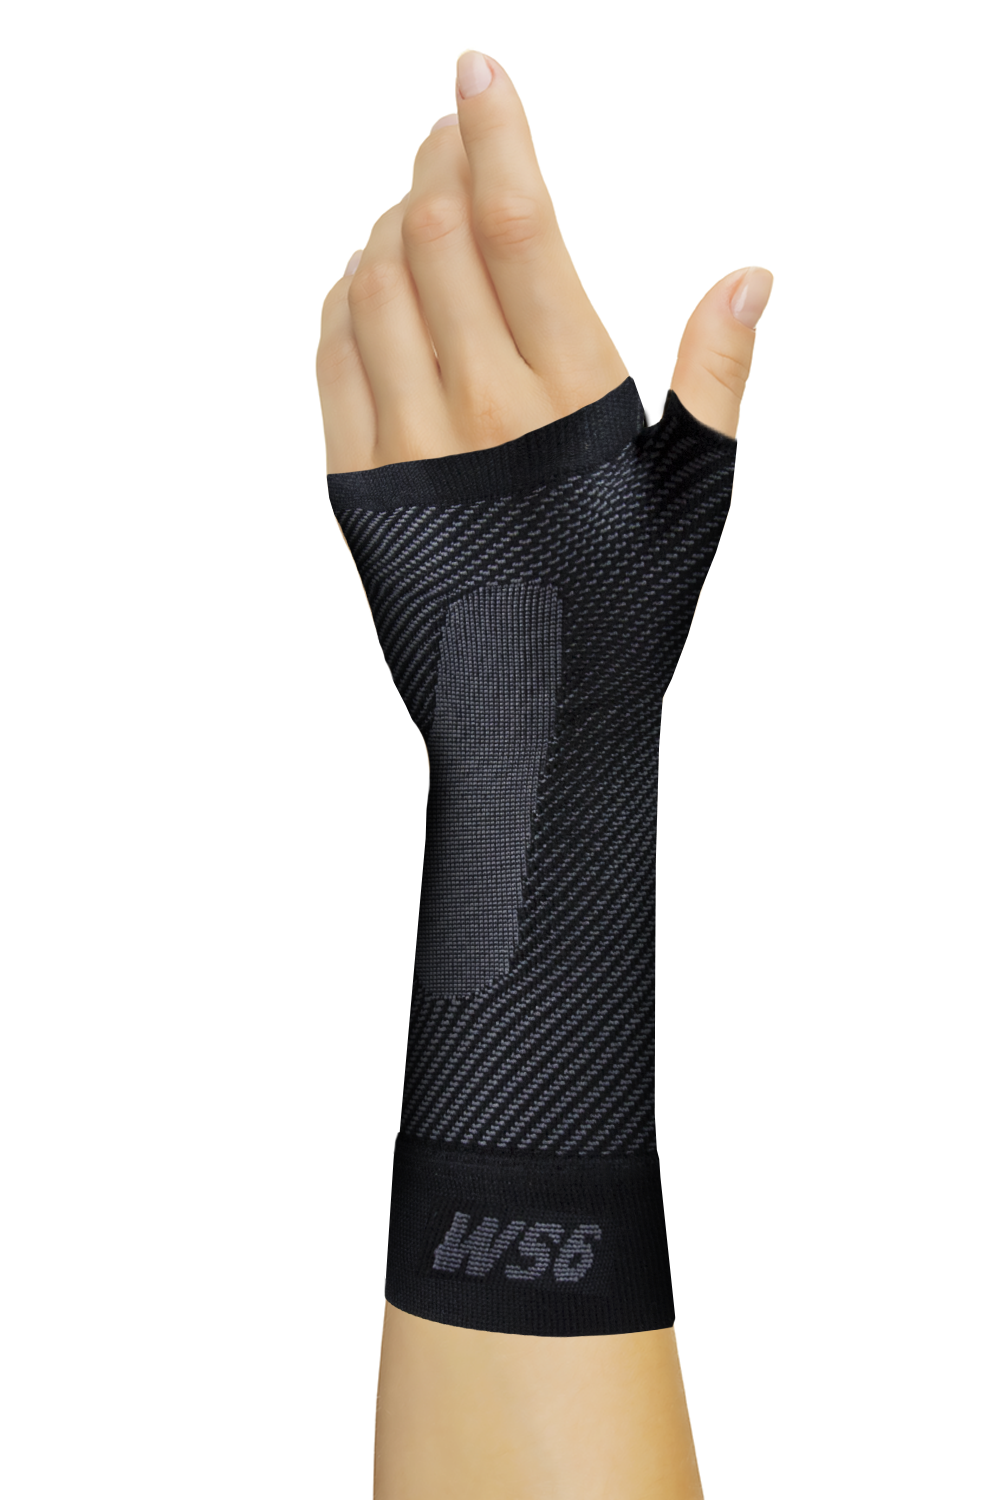 Orthosleeve Ws6 Wrist Sleeve Black Small image 0